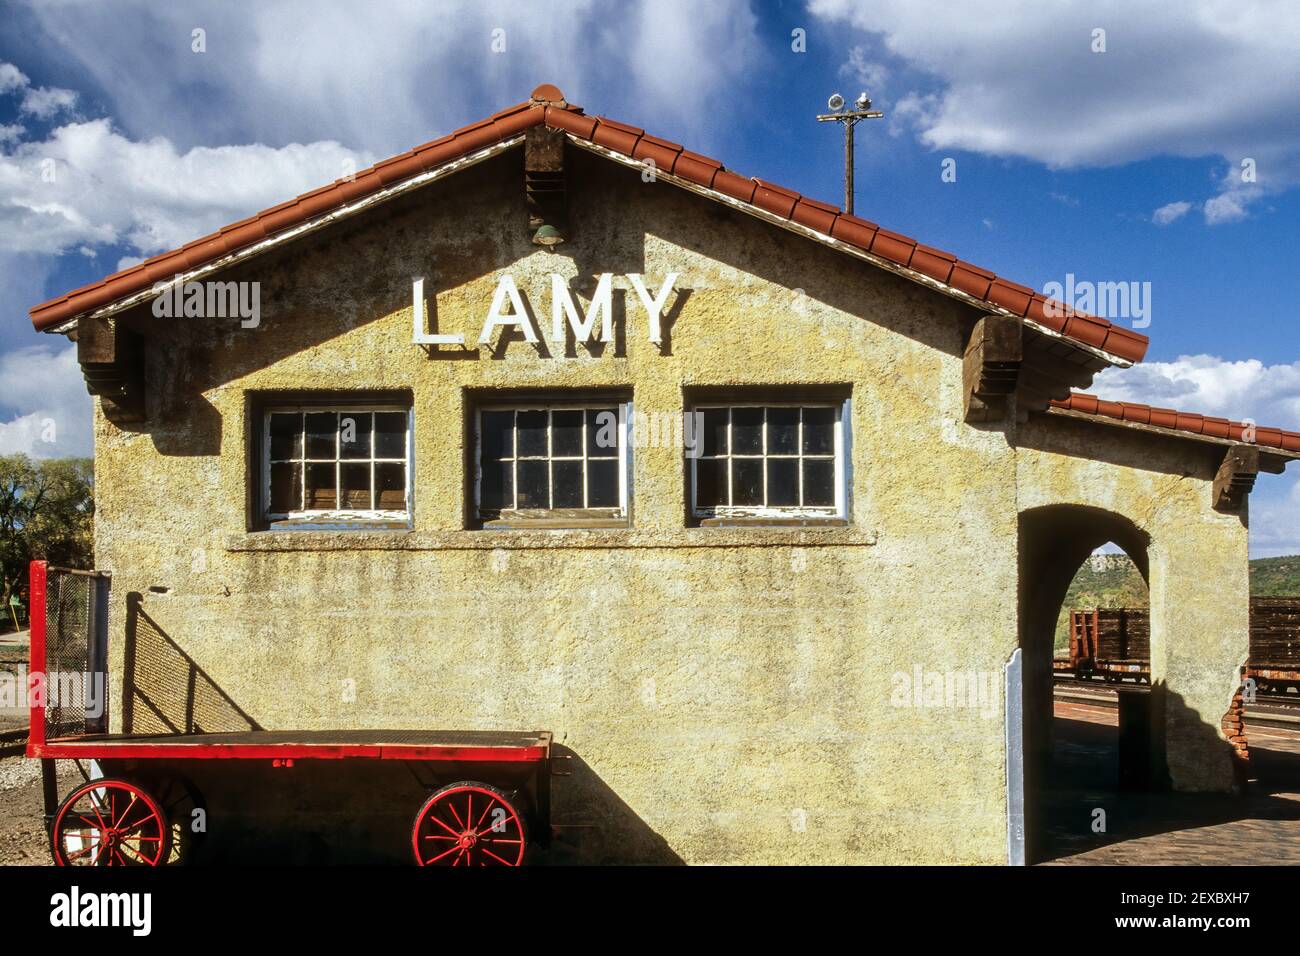 Train Depot, Lamy, New Mexico USA Stock Photo